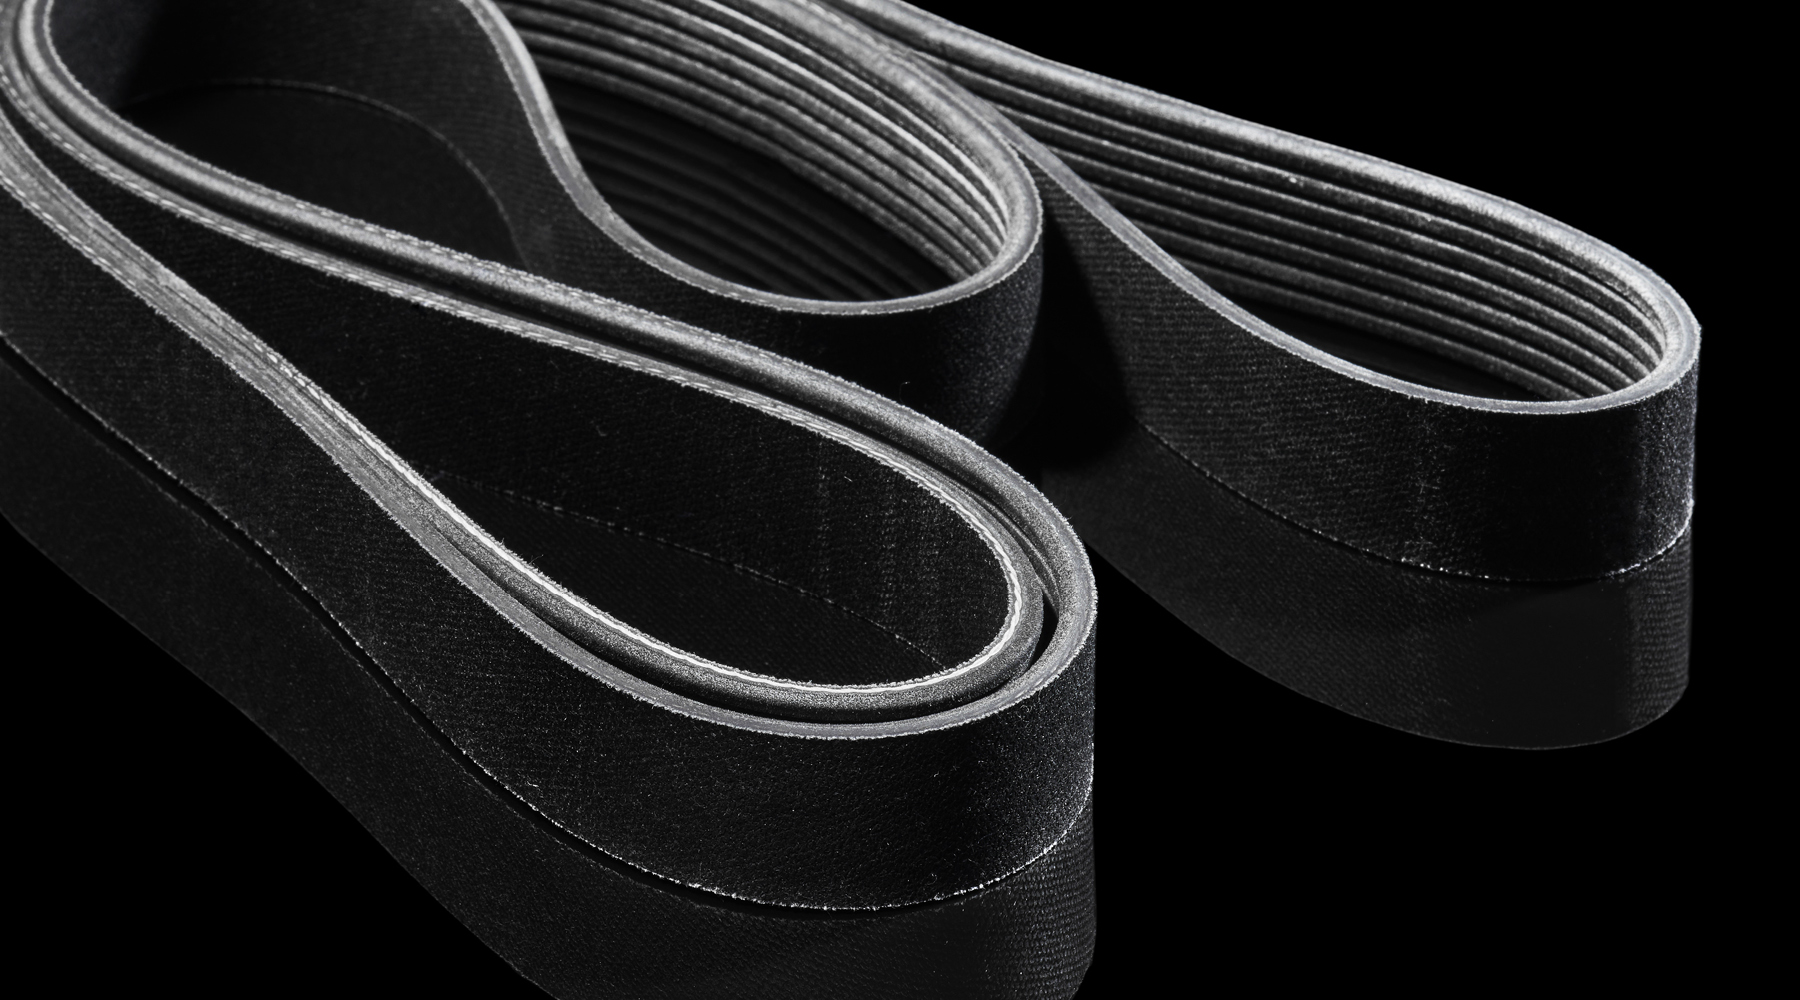 Serpentine Belts